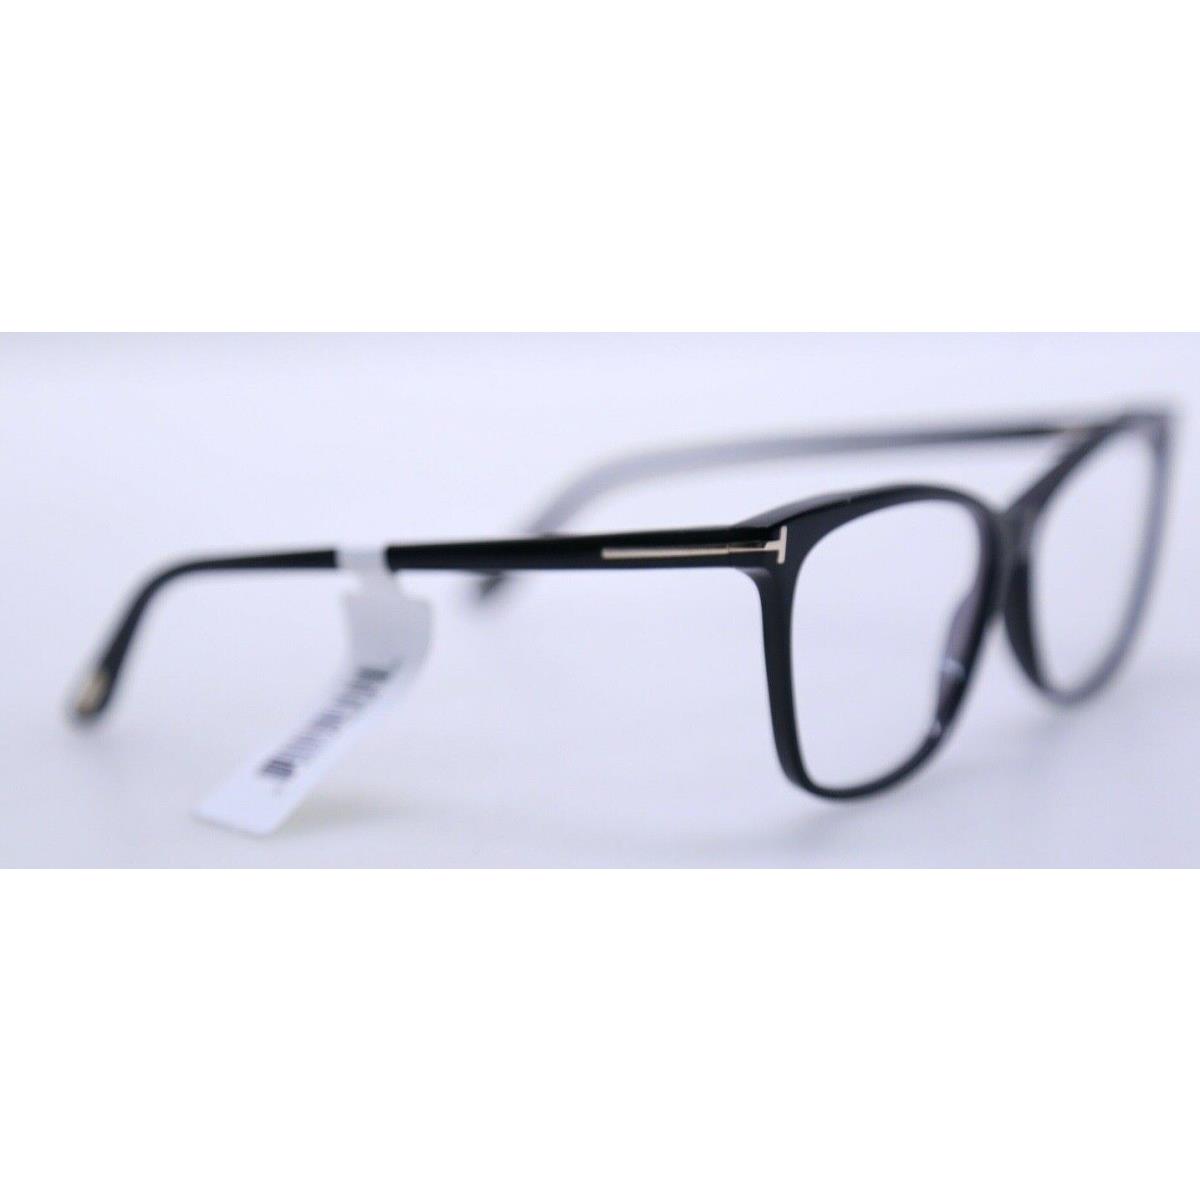 Tom Ford eyeglasses  - Shiny Black Frame 0